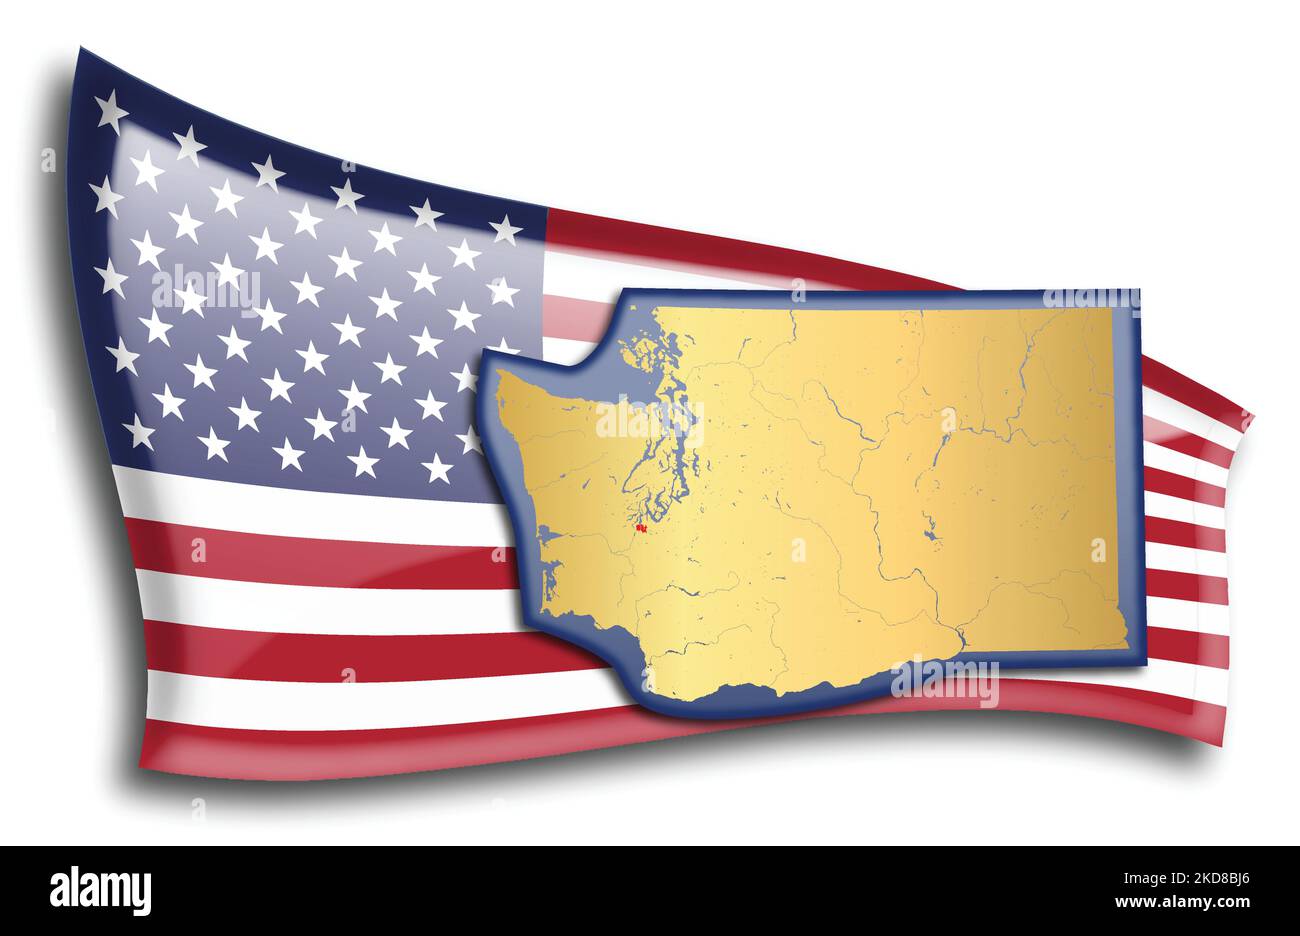 stati Uniti - mappa di Washington contro una bandiera americana. Fiumi e laghi sono mostrati sulla mappa. La bandiera americana e la mappa dello stato possono essere utilizzate separatamente Illustrazione Vettoriale